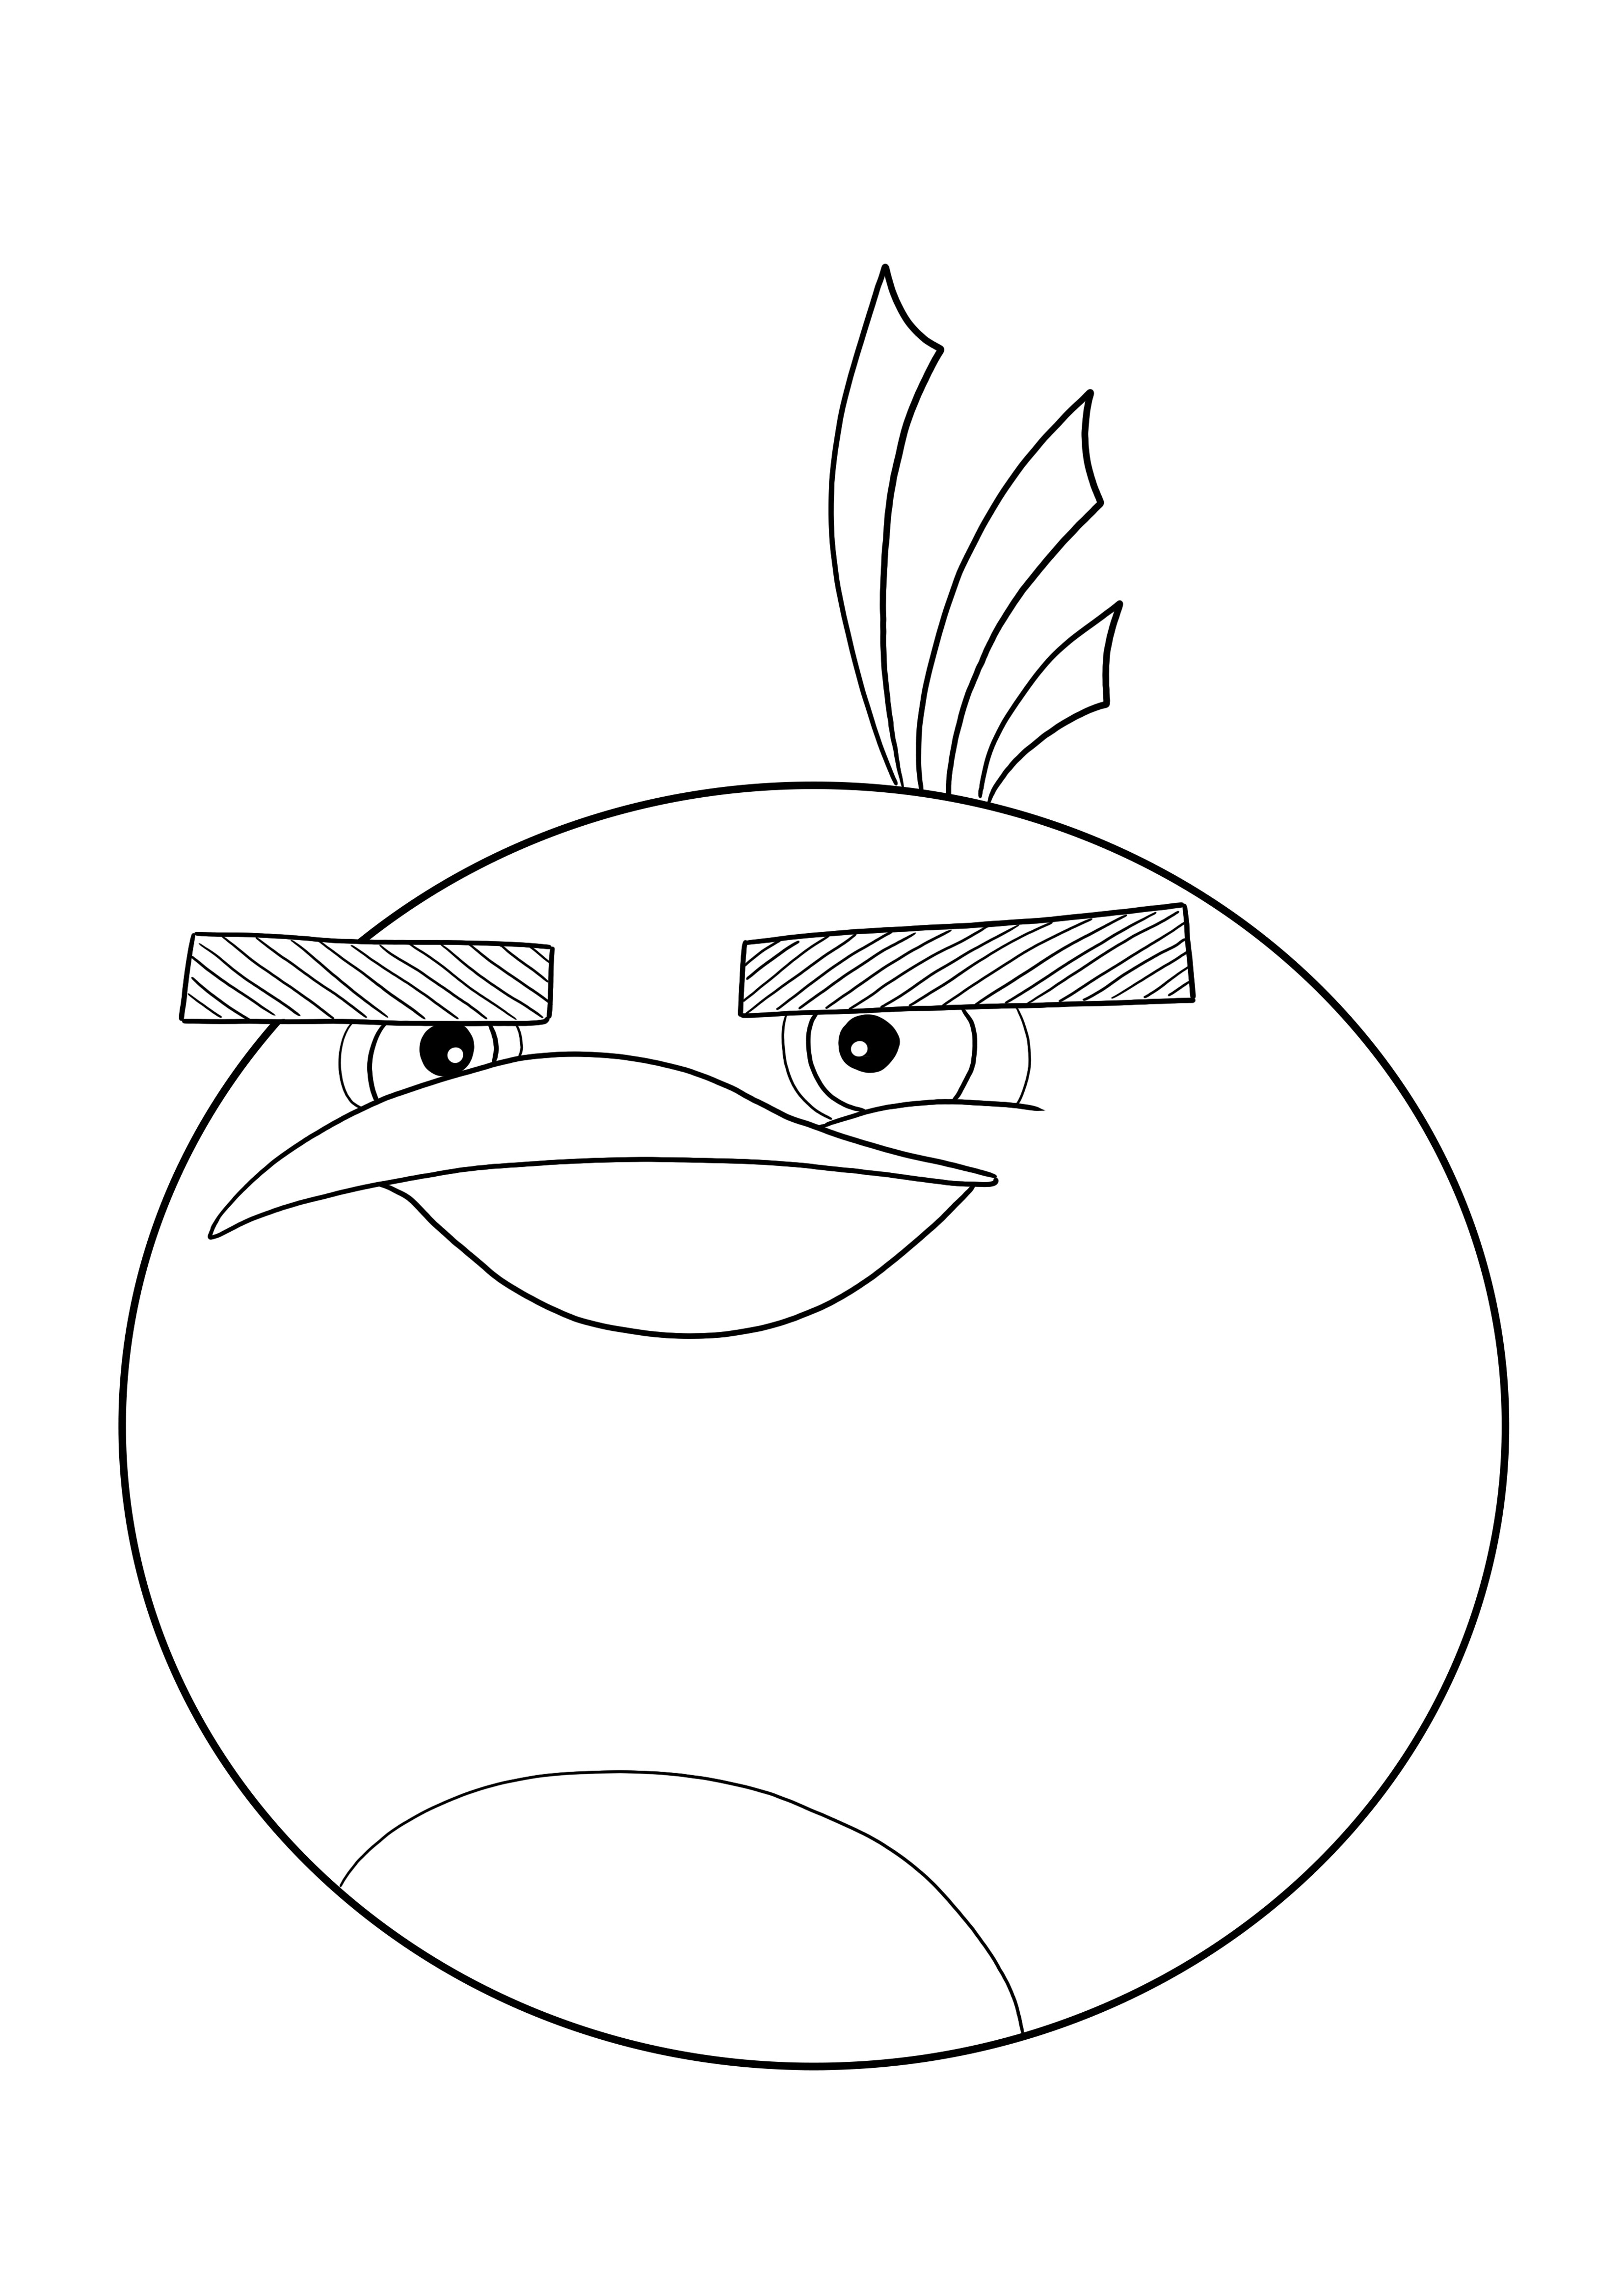 Gratis kleurplaat van Bomb from Angry Birds om af te drukken en te downloaden kleurplaat